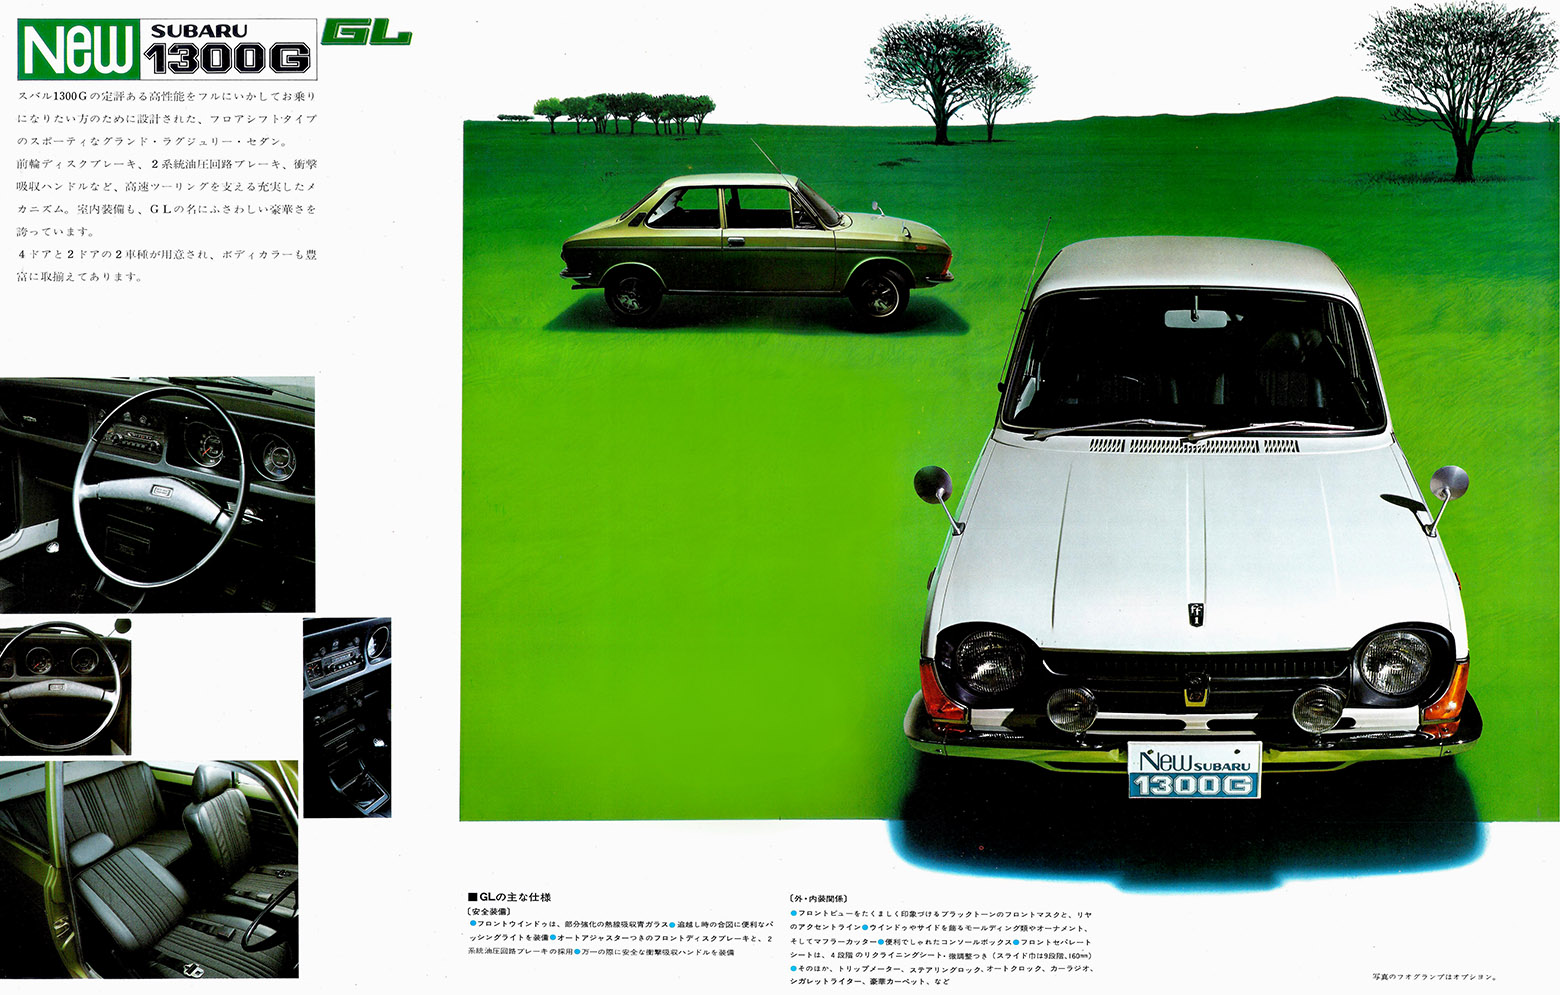 1997年11月発行 New スバル 1300G シリーズ (7)